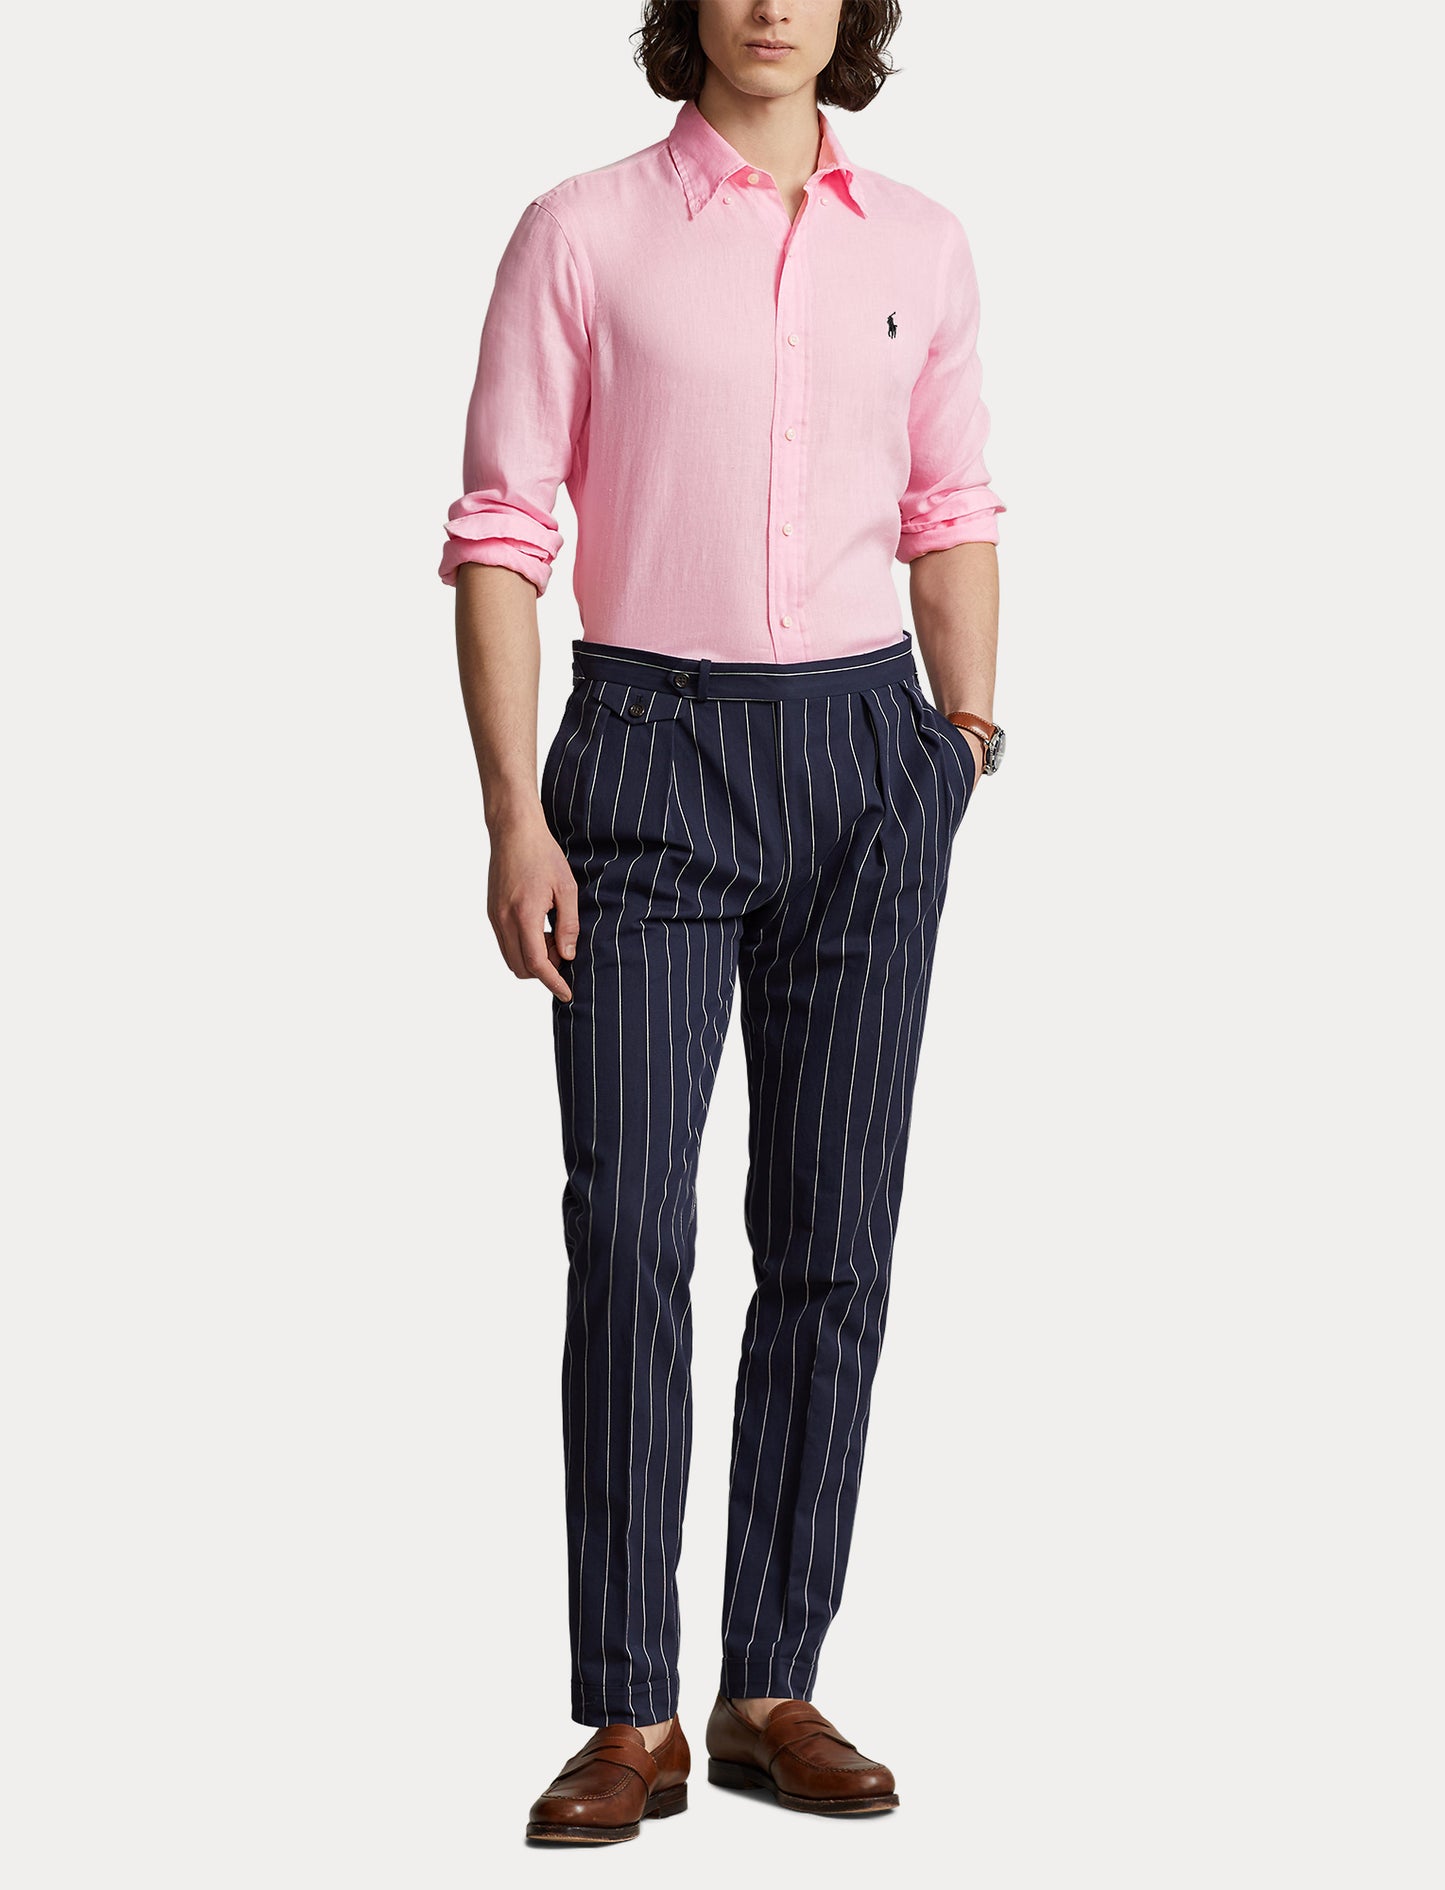 Polo Ralph Lauren Custom Fit Linen Shirt Carmel Pink